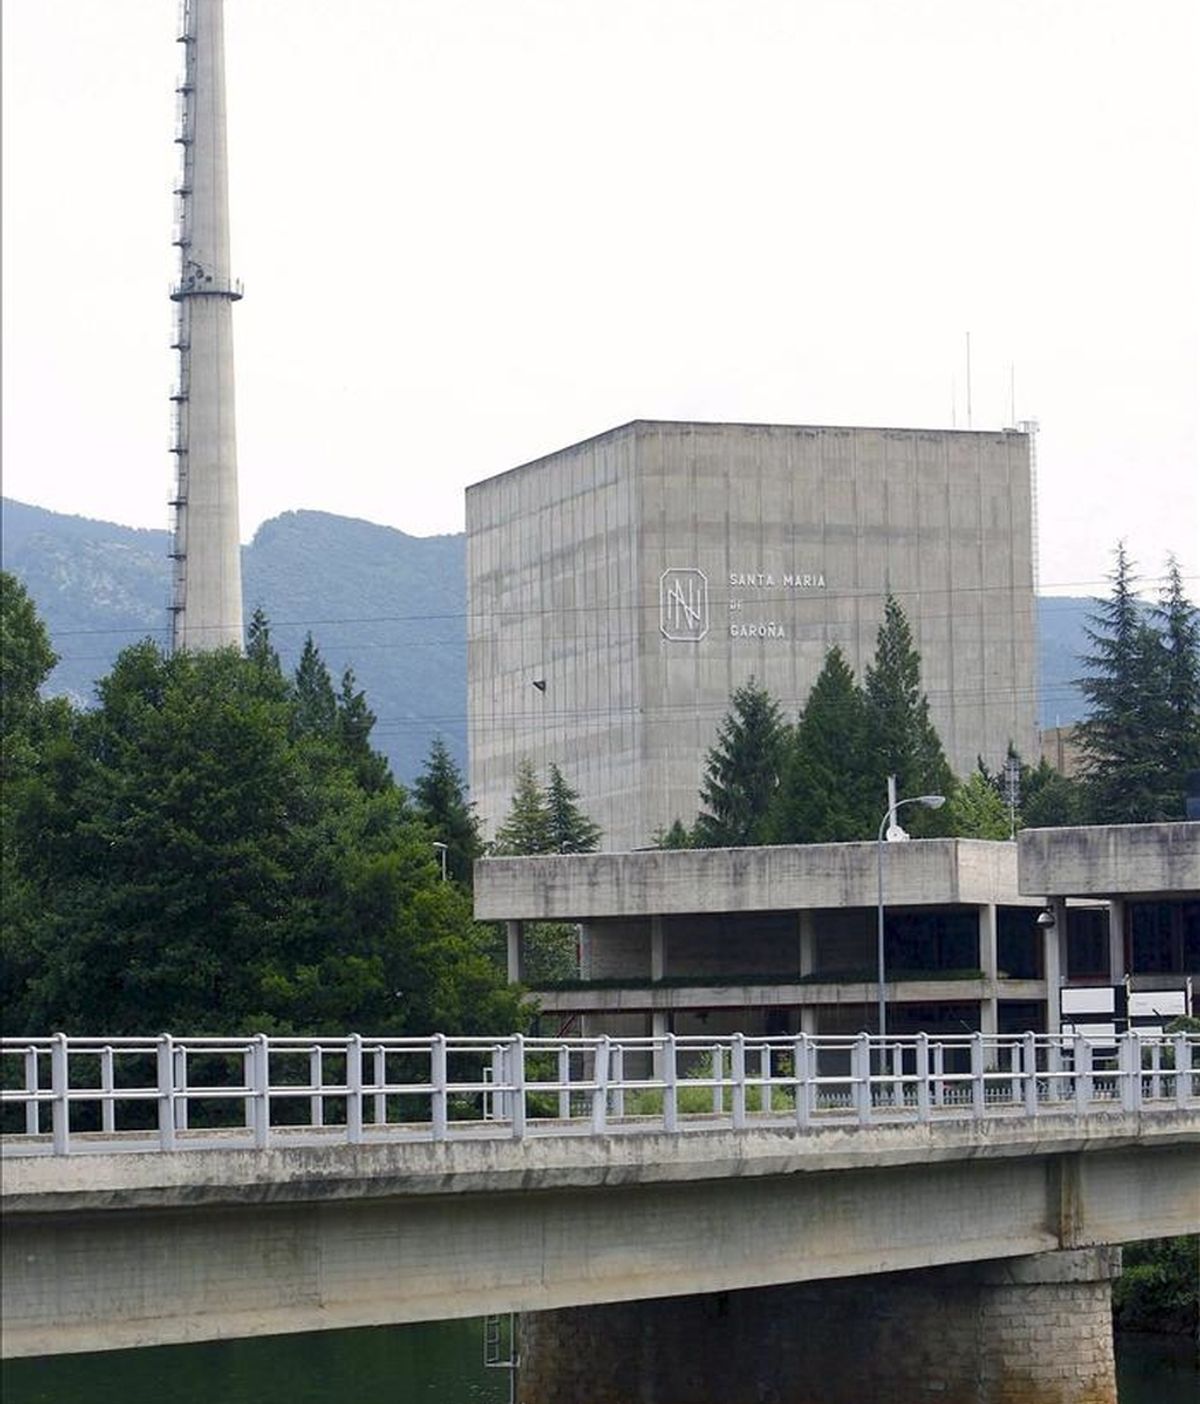 En la imagen, exterior de la central nuclear de Garoña, emplazada en Santa María de Garoña, Burgos. EFE/Archivo